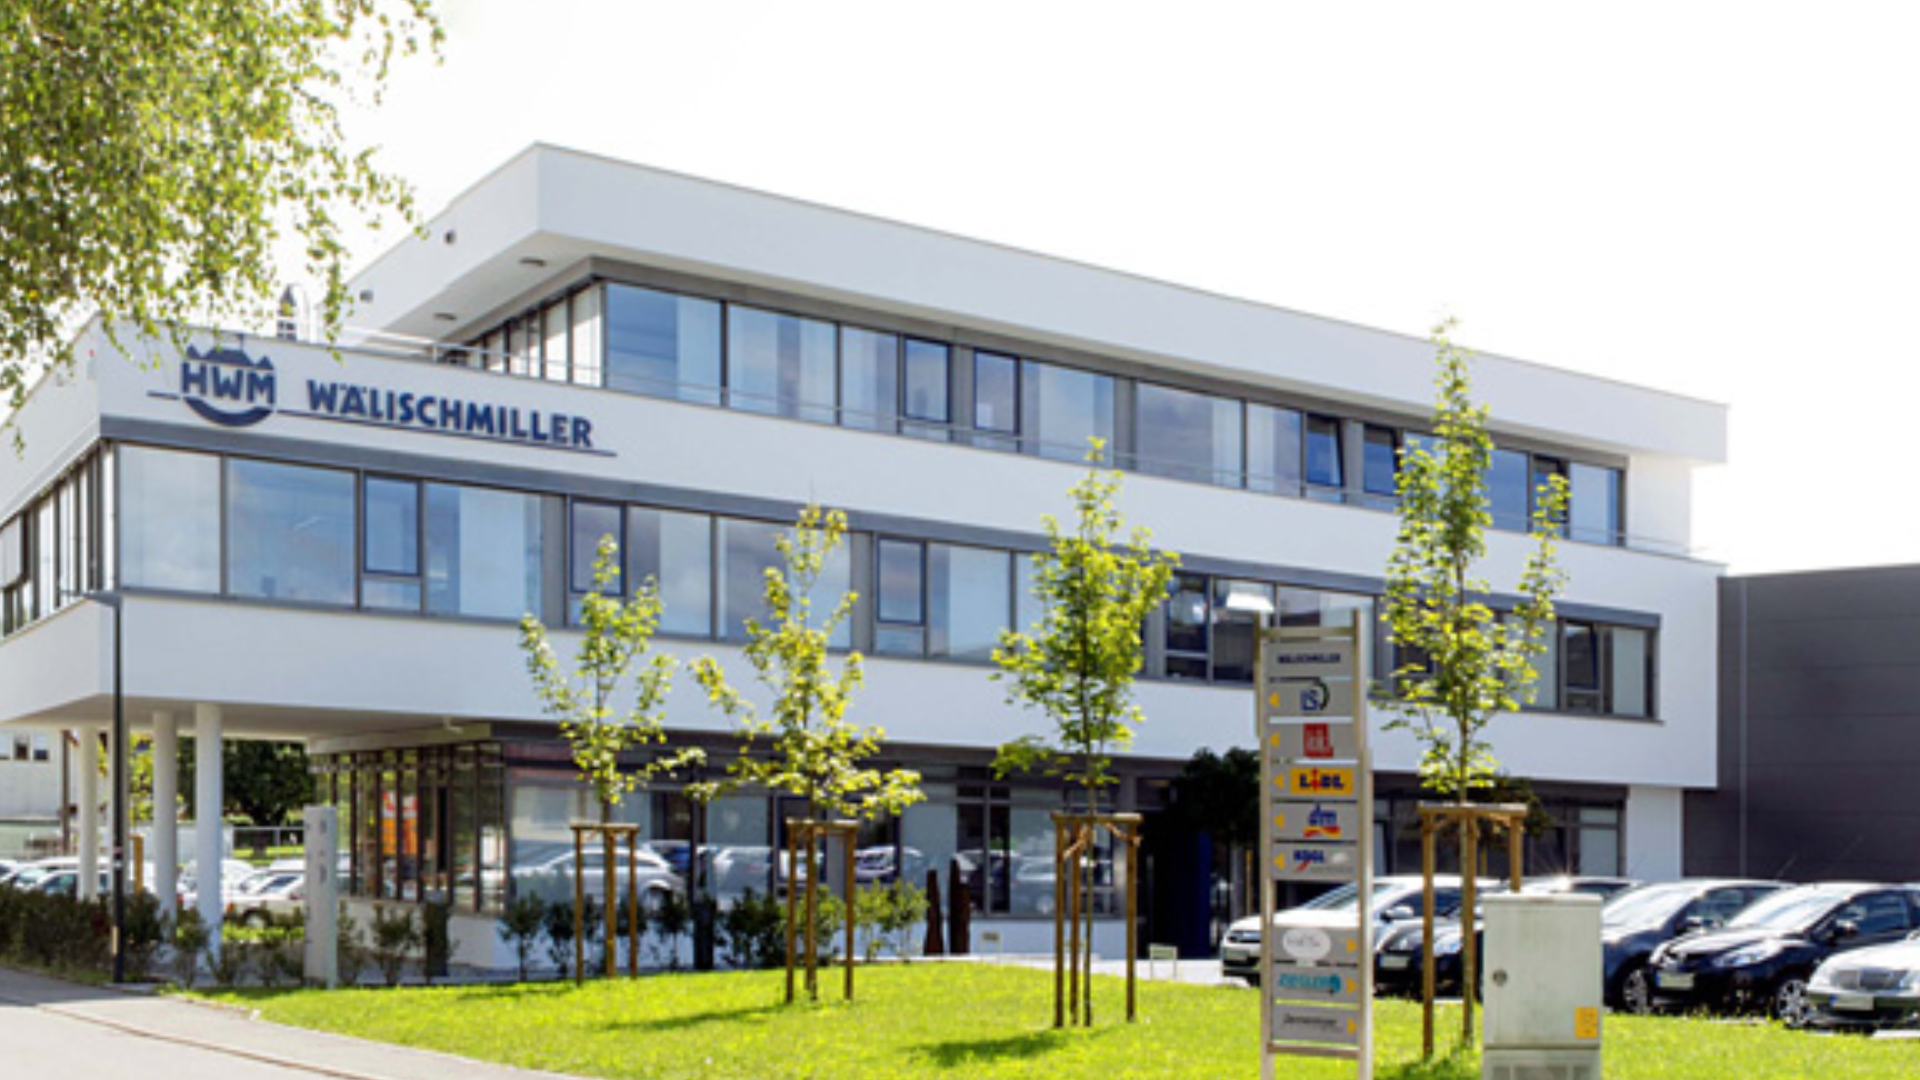 Stadtgesprch - Wlischmiller Engineering GmbH